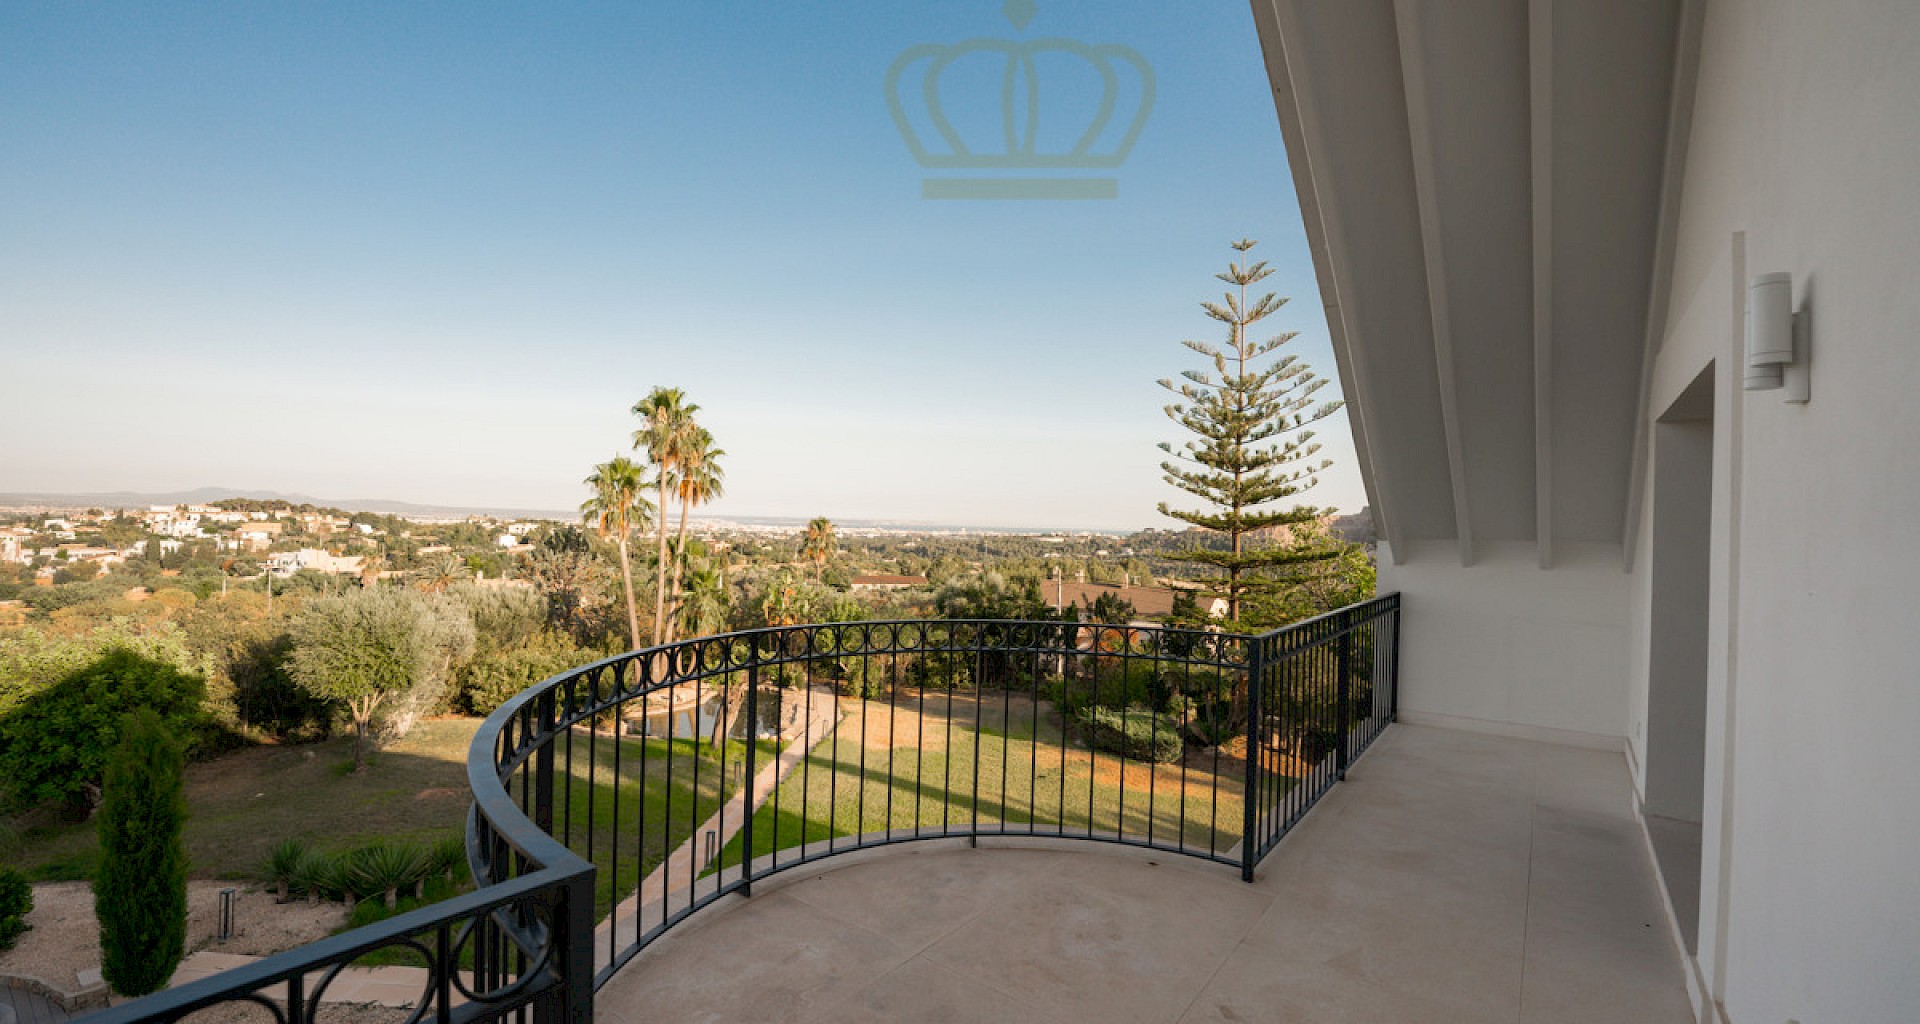 KROHN & LUEDEMANN Gran chalet con vistas a Palma y gran terreno Villa in Establiments